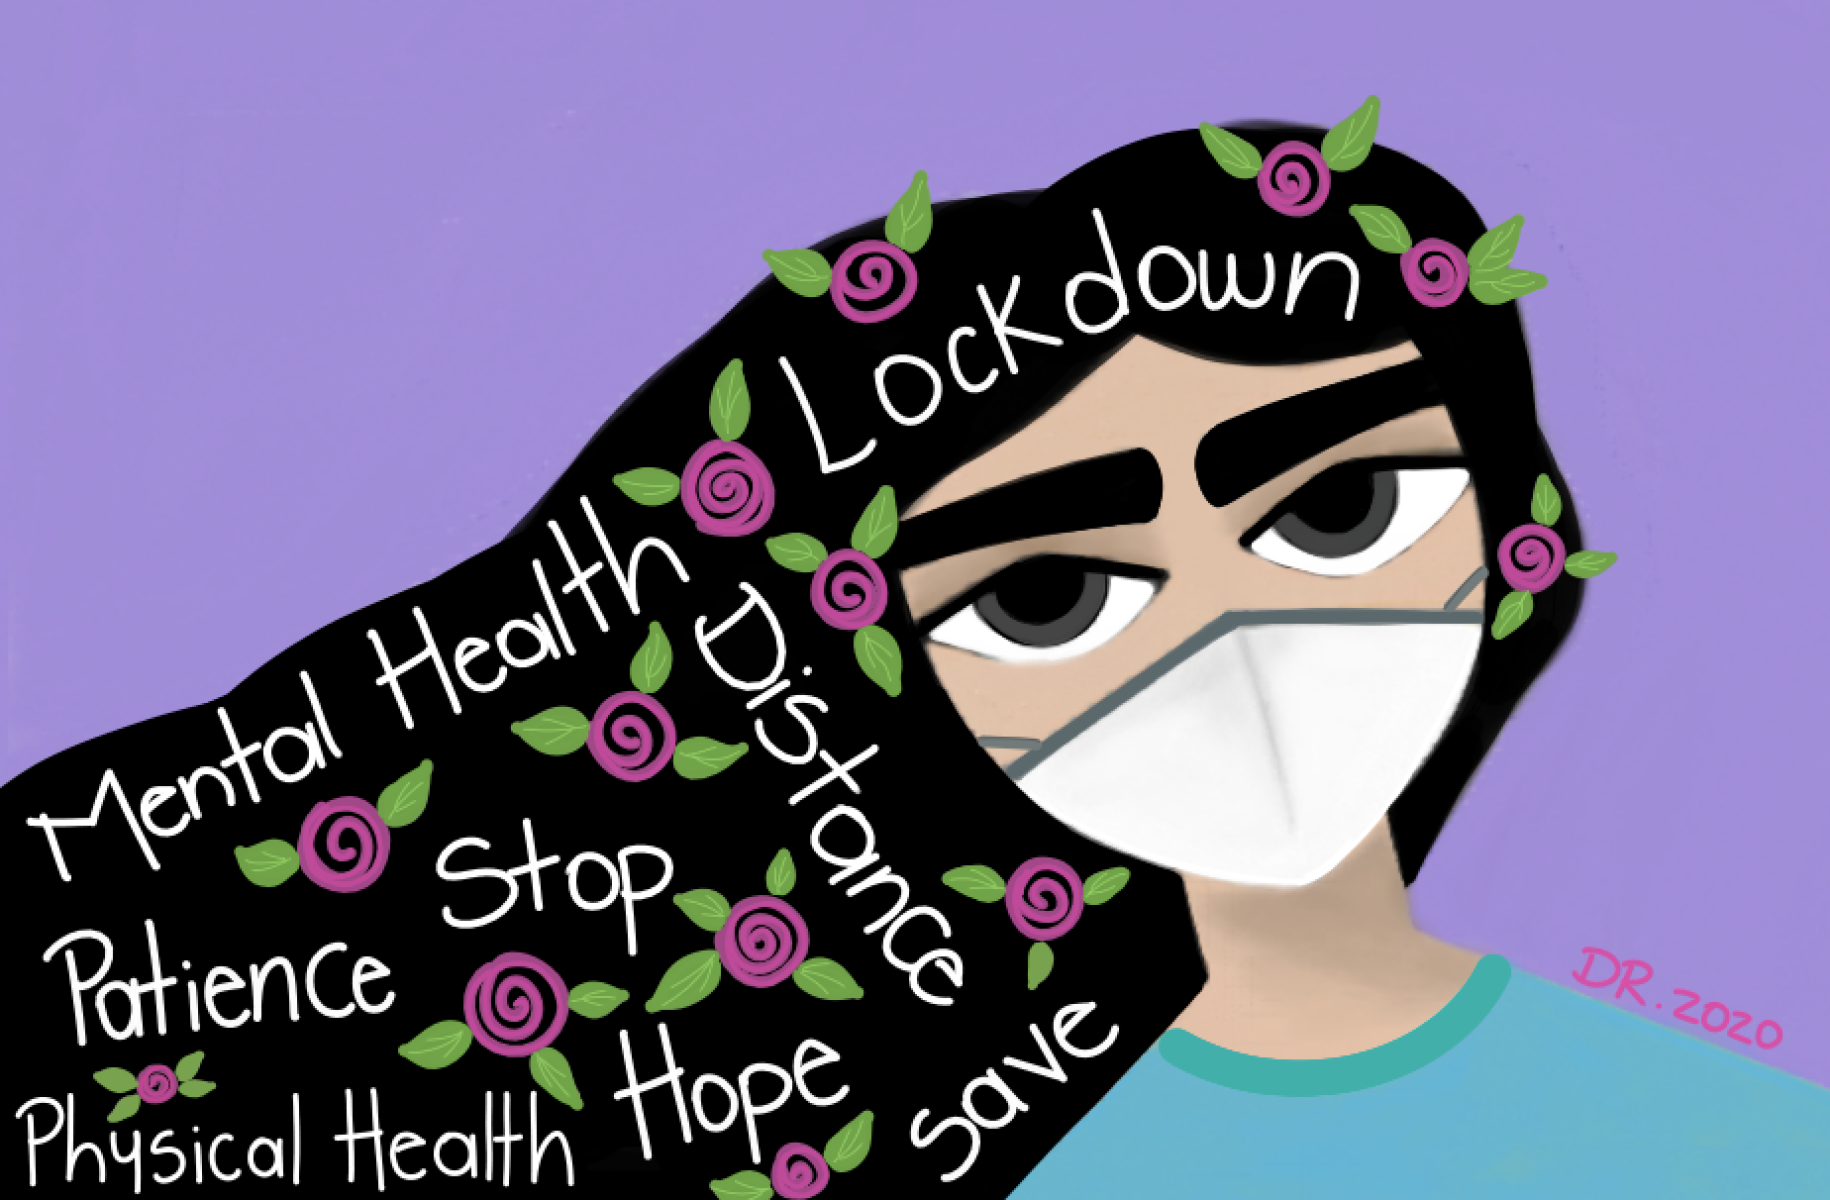 يُظهر الرسم فتاة ترتدي قناع وجه مع مصطلحات متعلقة بالصحة العقلية مكتوبة على شعرها.